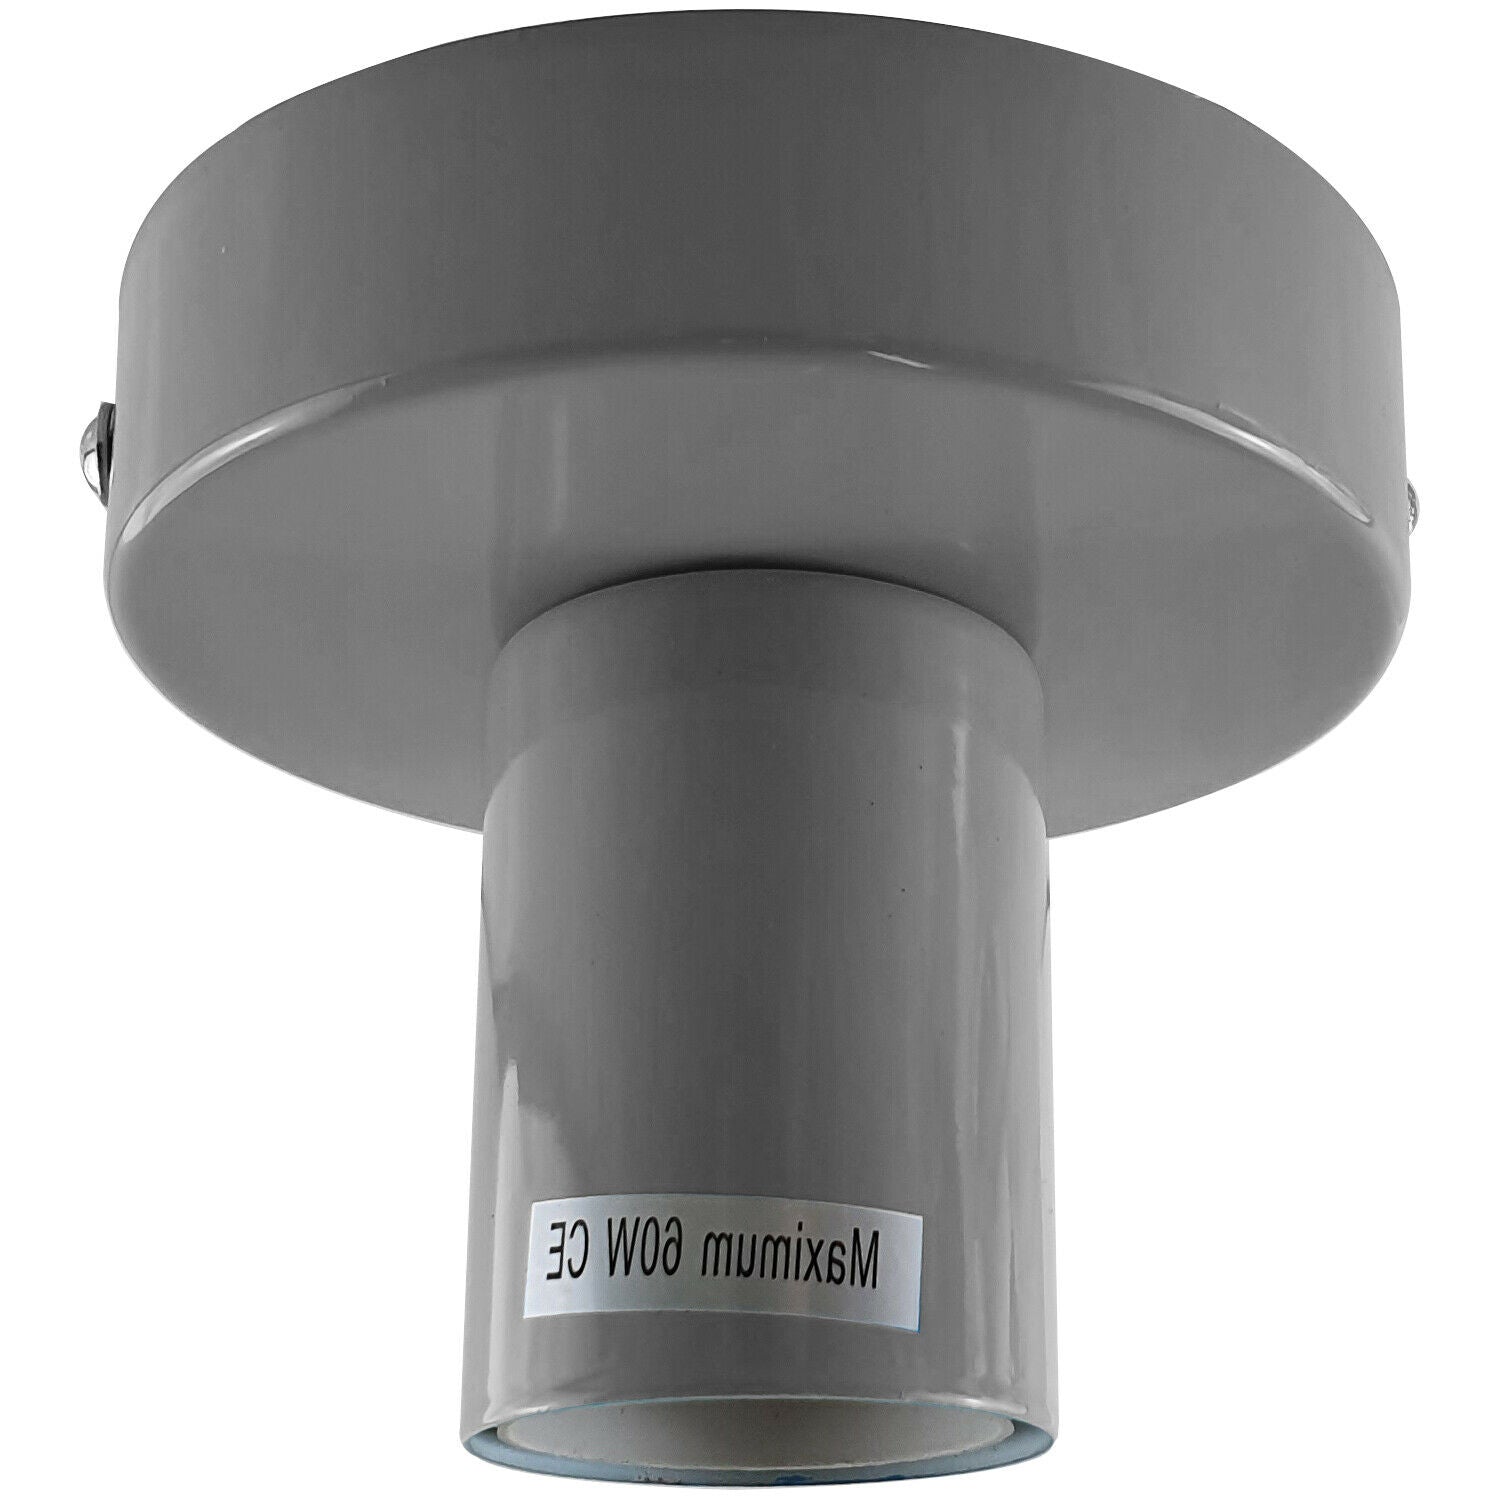 LEDSone industrial vintage Grey Flush Mount Ceiling Light Fitting~1686 - LEDSone UK Ltd